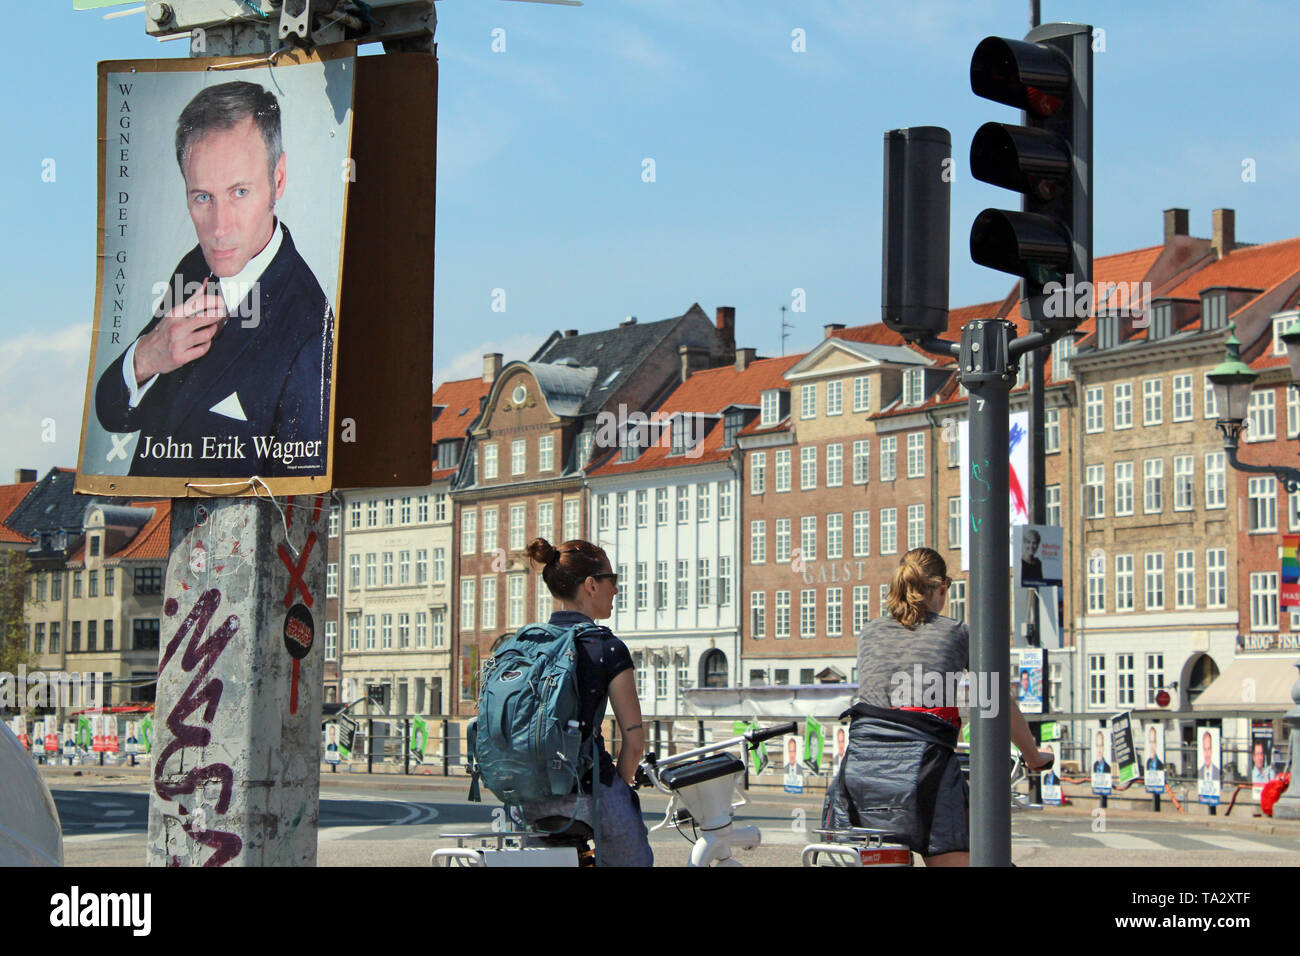 Election poster promoting John Erik Wanger for 2019 Danish general election, Copenhagen, Denmark Stock Photo